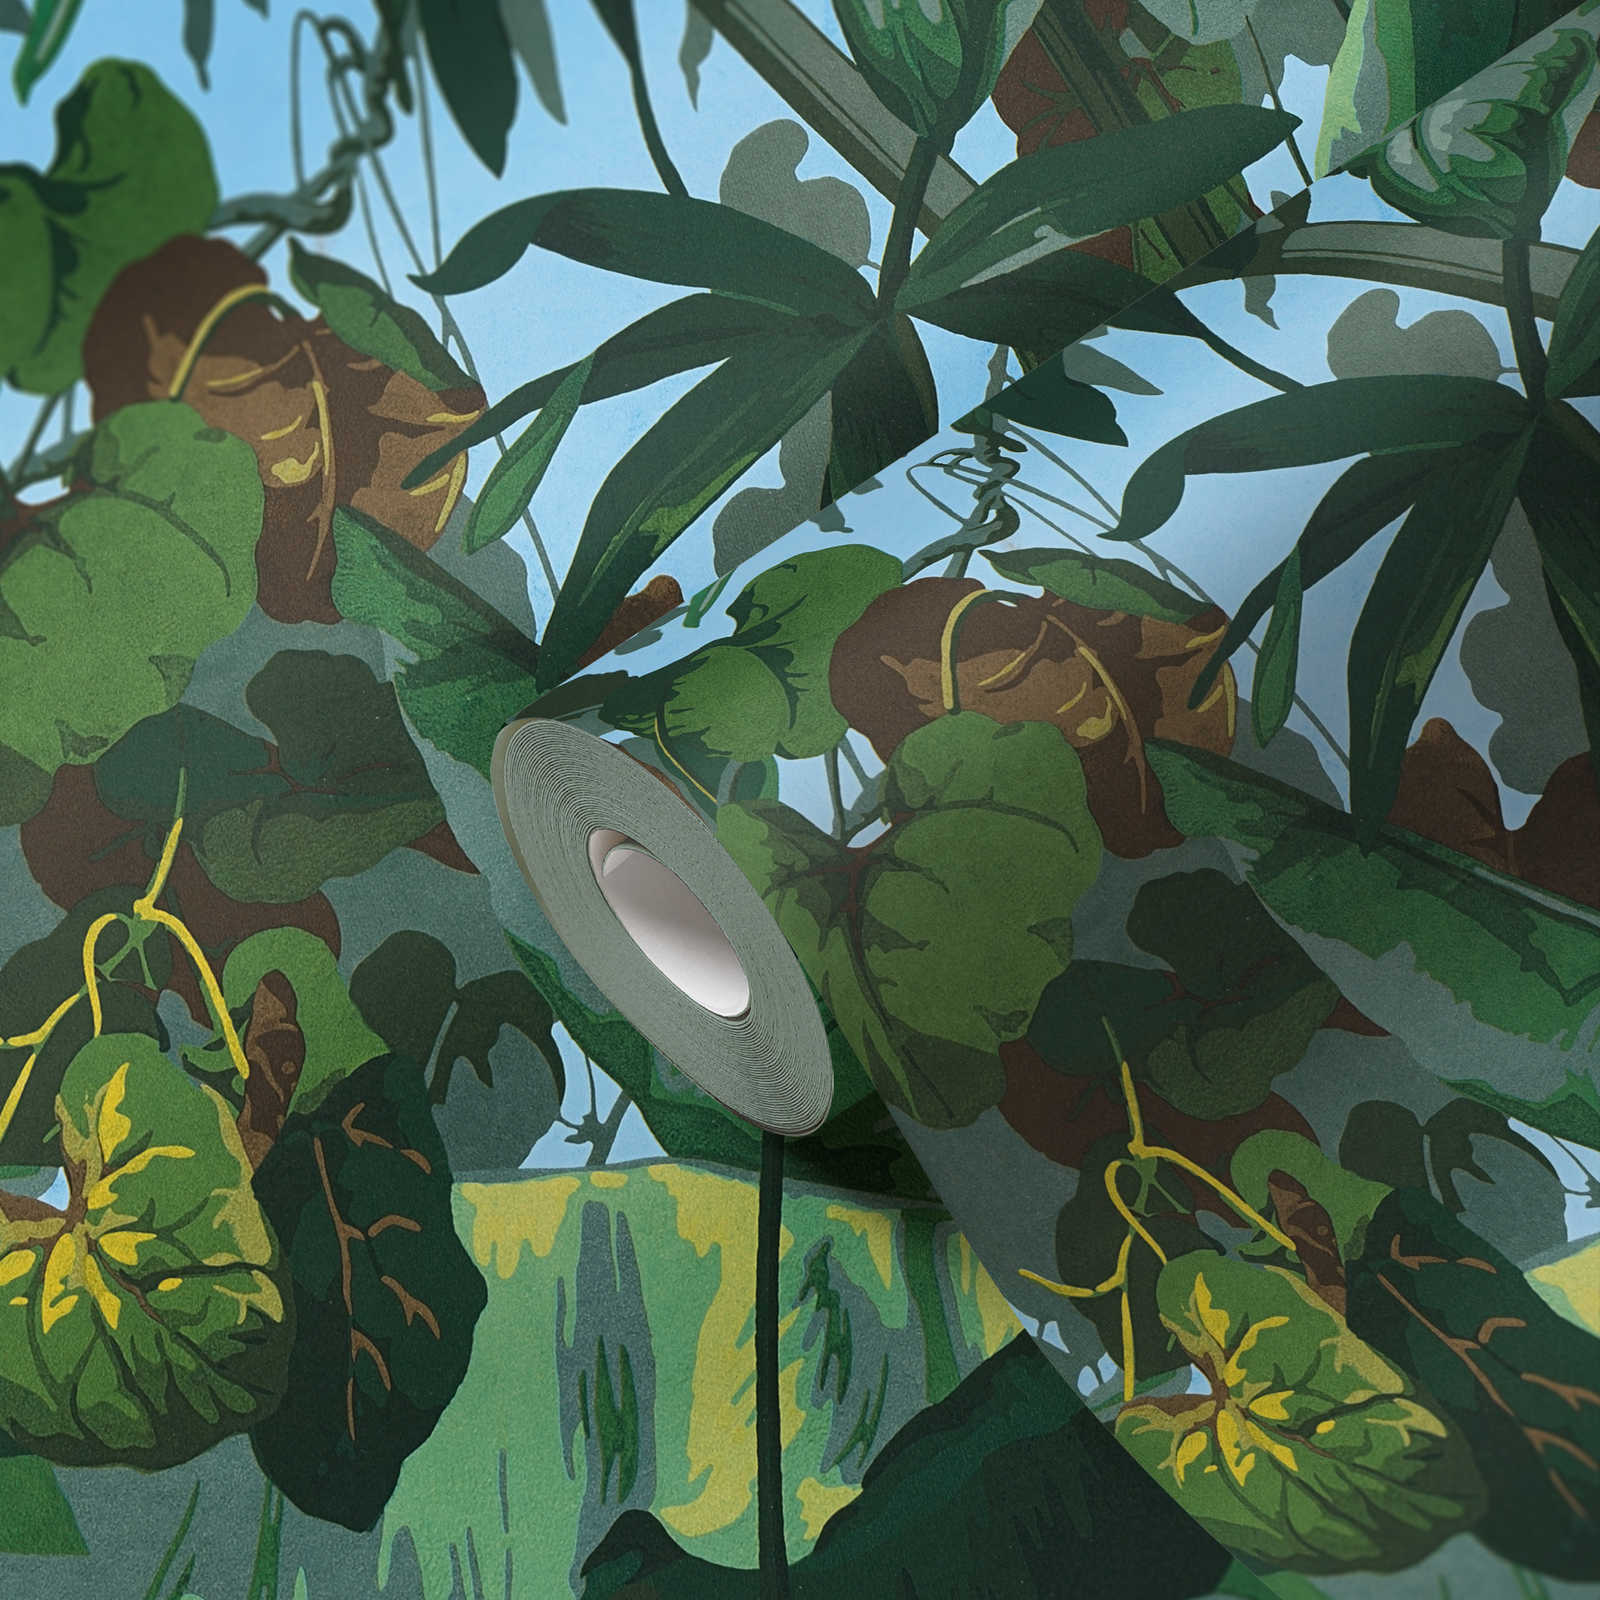             Zelfklevend behang | jungle behang met bladerenbos - groen, blauw, geel
        